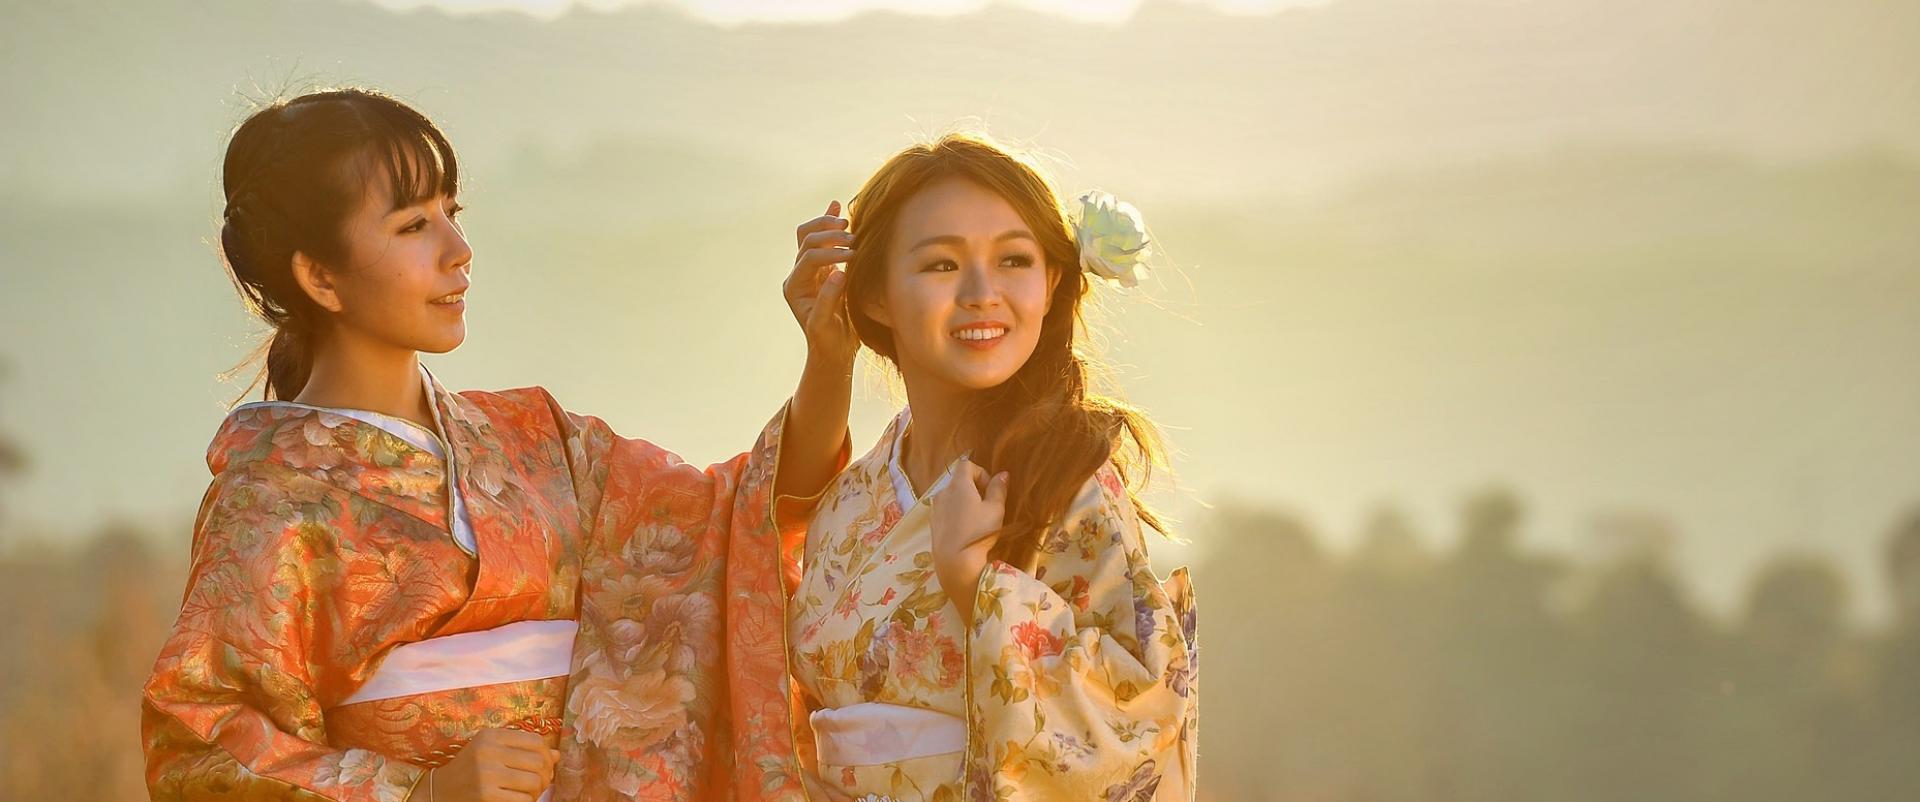 Japoński przepis na piękno – J-Beauty nadaje ton